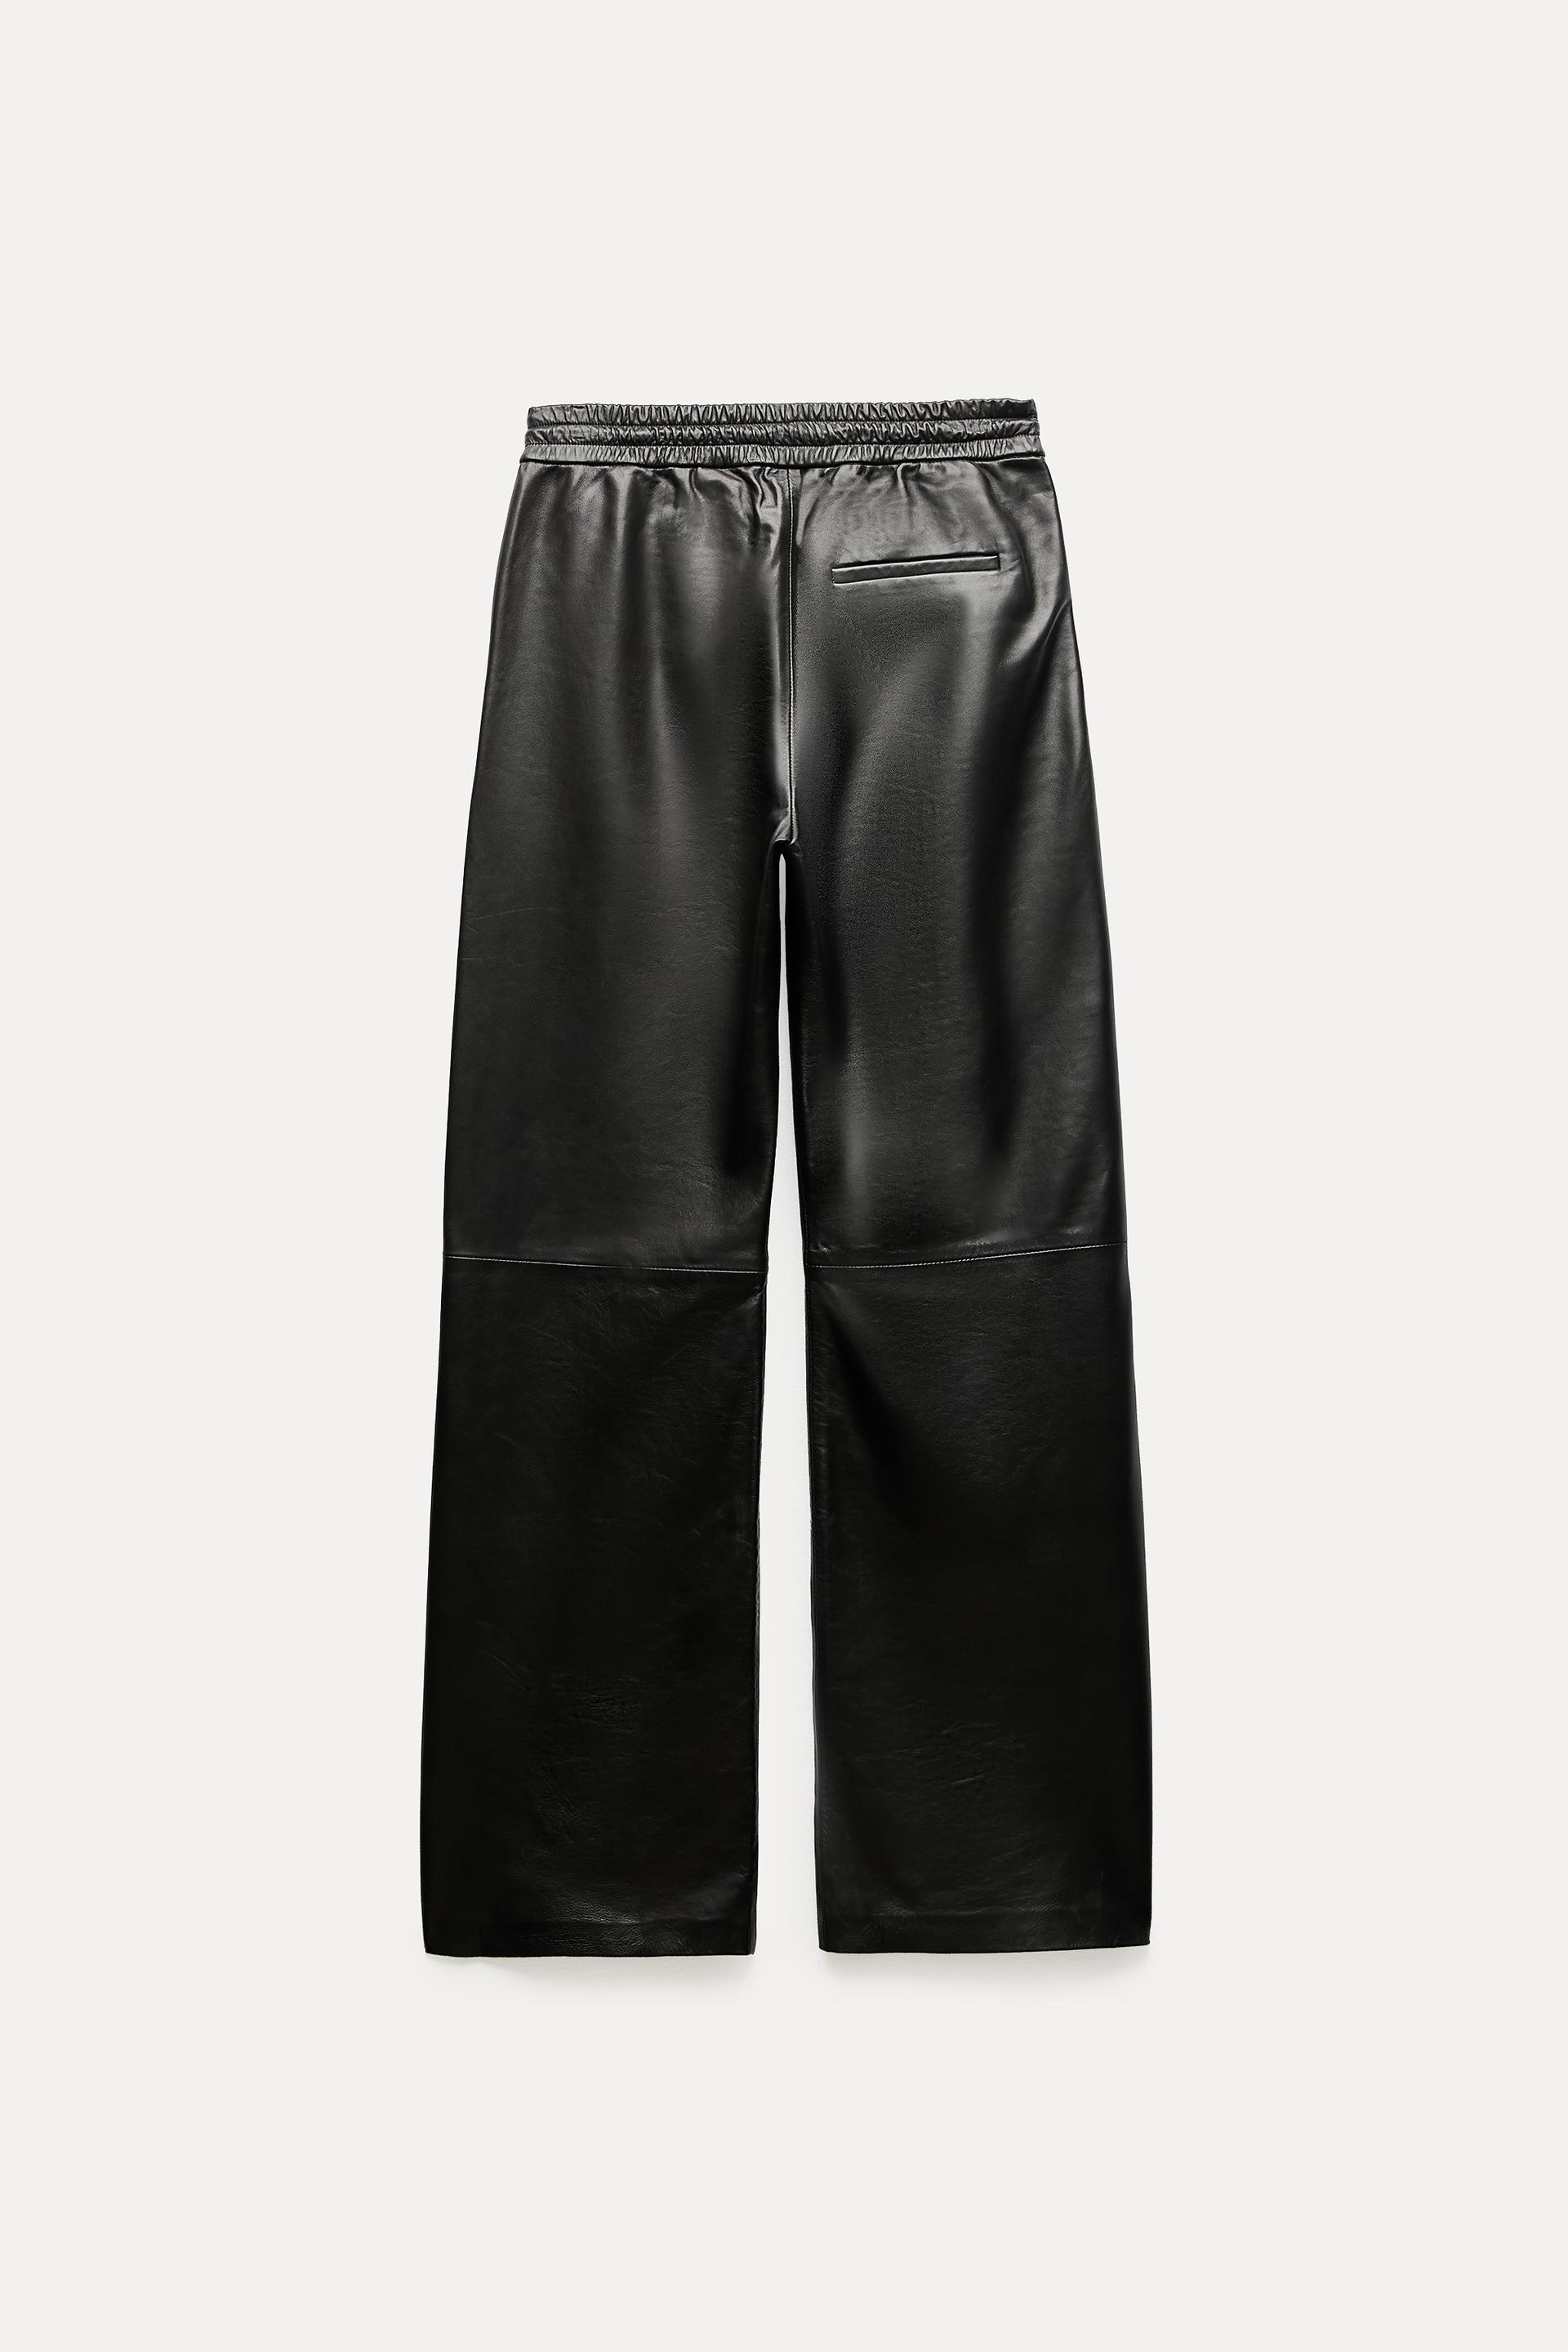 🎗 Model-PTL24026 💰 109,90 TL 🎀 Zara Şardonlu Deri Pantolon 👗 Beden:  S-M-L 👑 Kumaş : Deri ❤ Renk : Siyah 🎁 Kargo:…